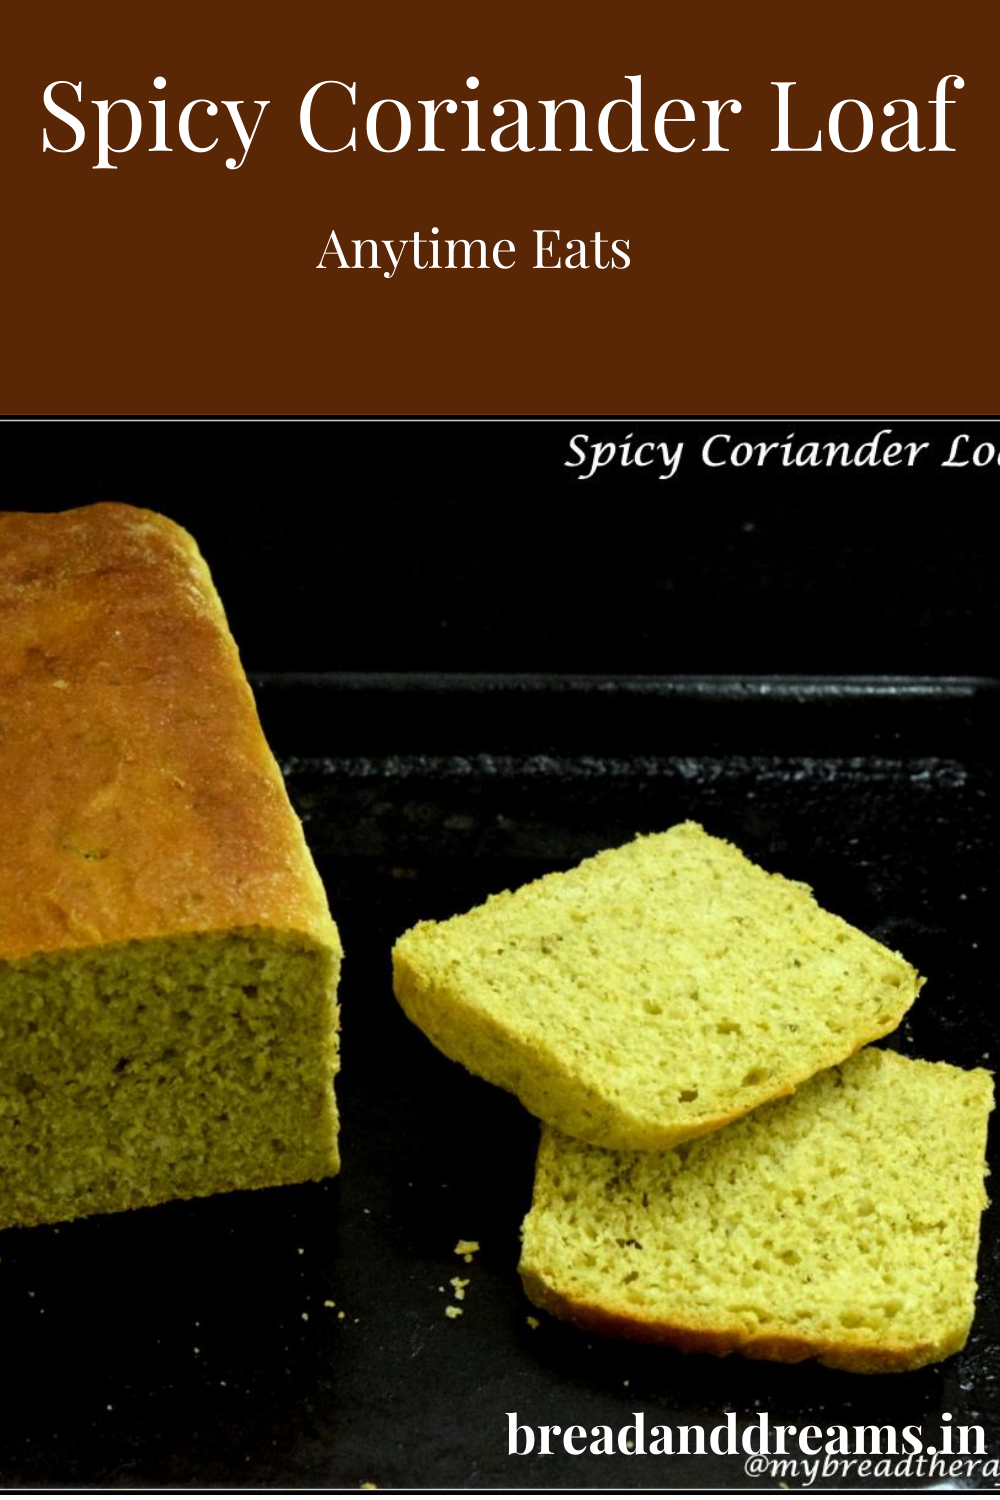 Spicy Coriander Bread